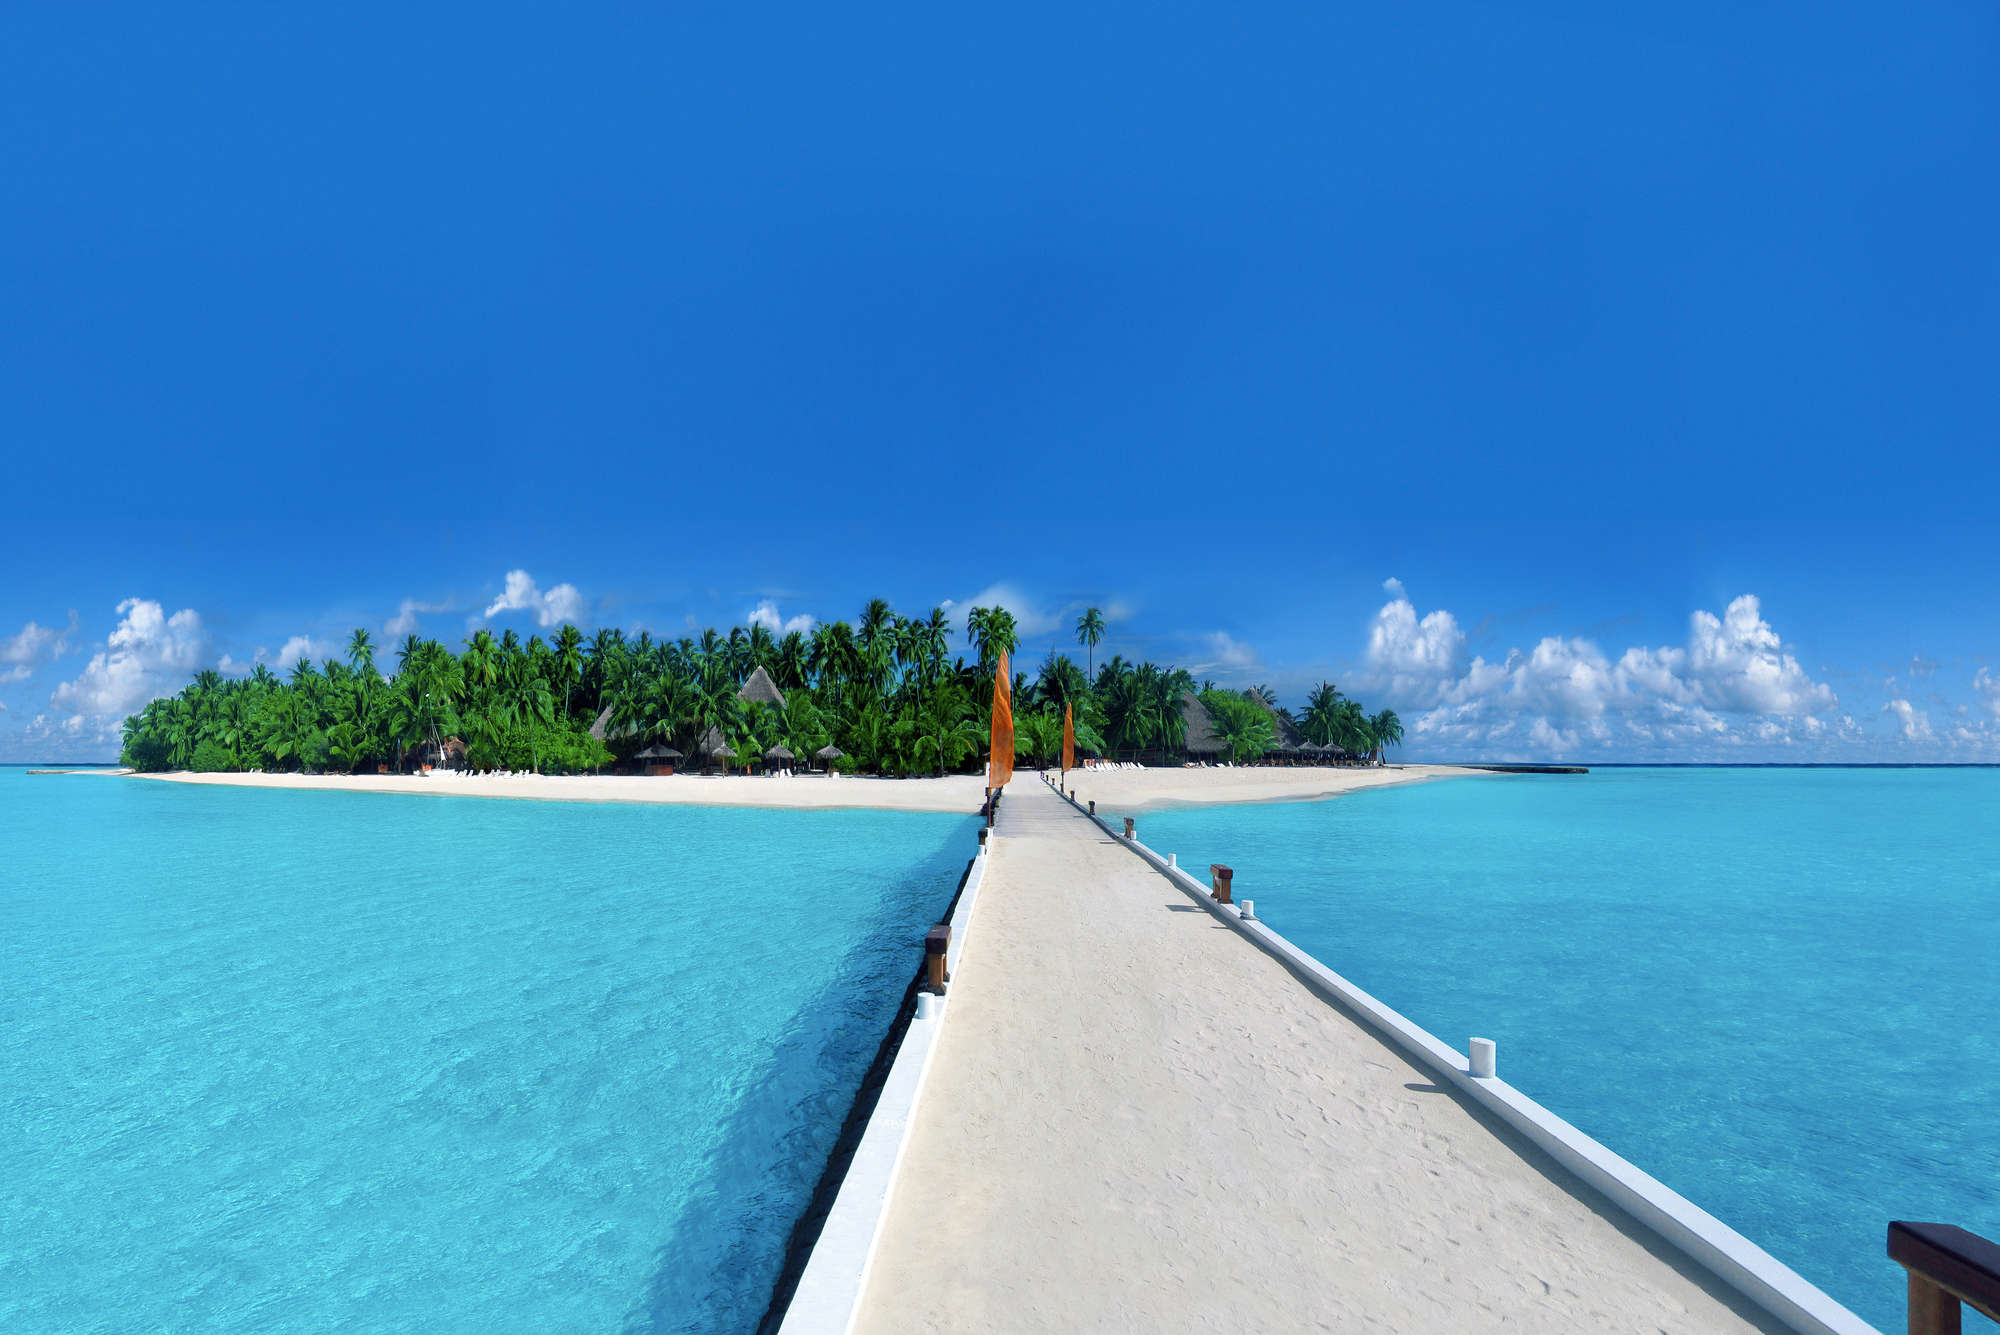             Fototapete Insel mit Steg zum Strand – Strukturiertes Vlies
        